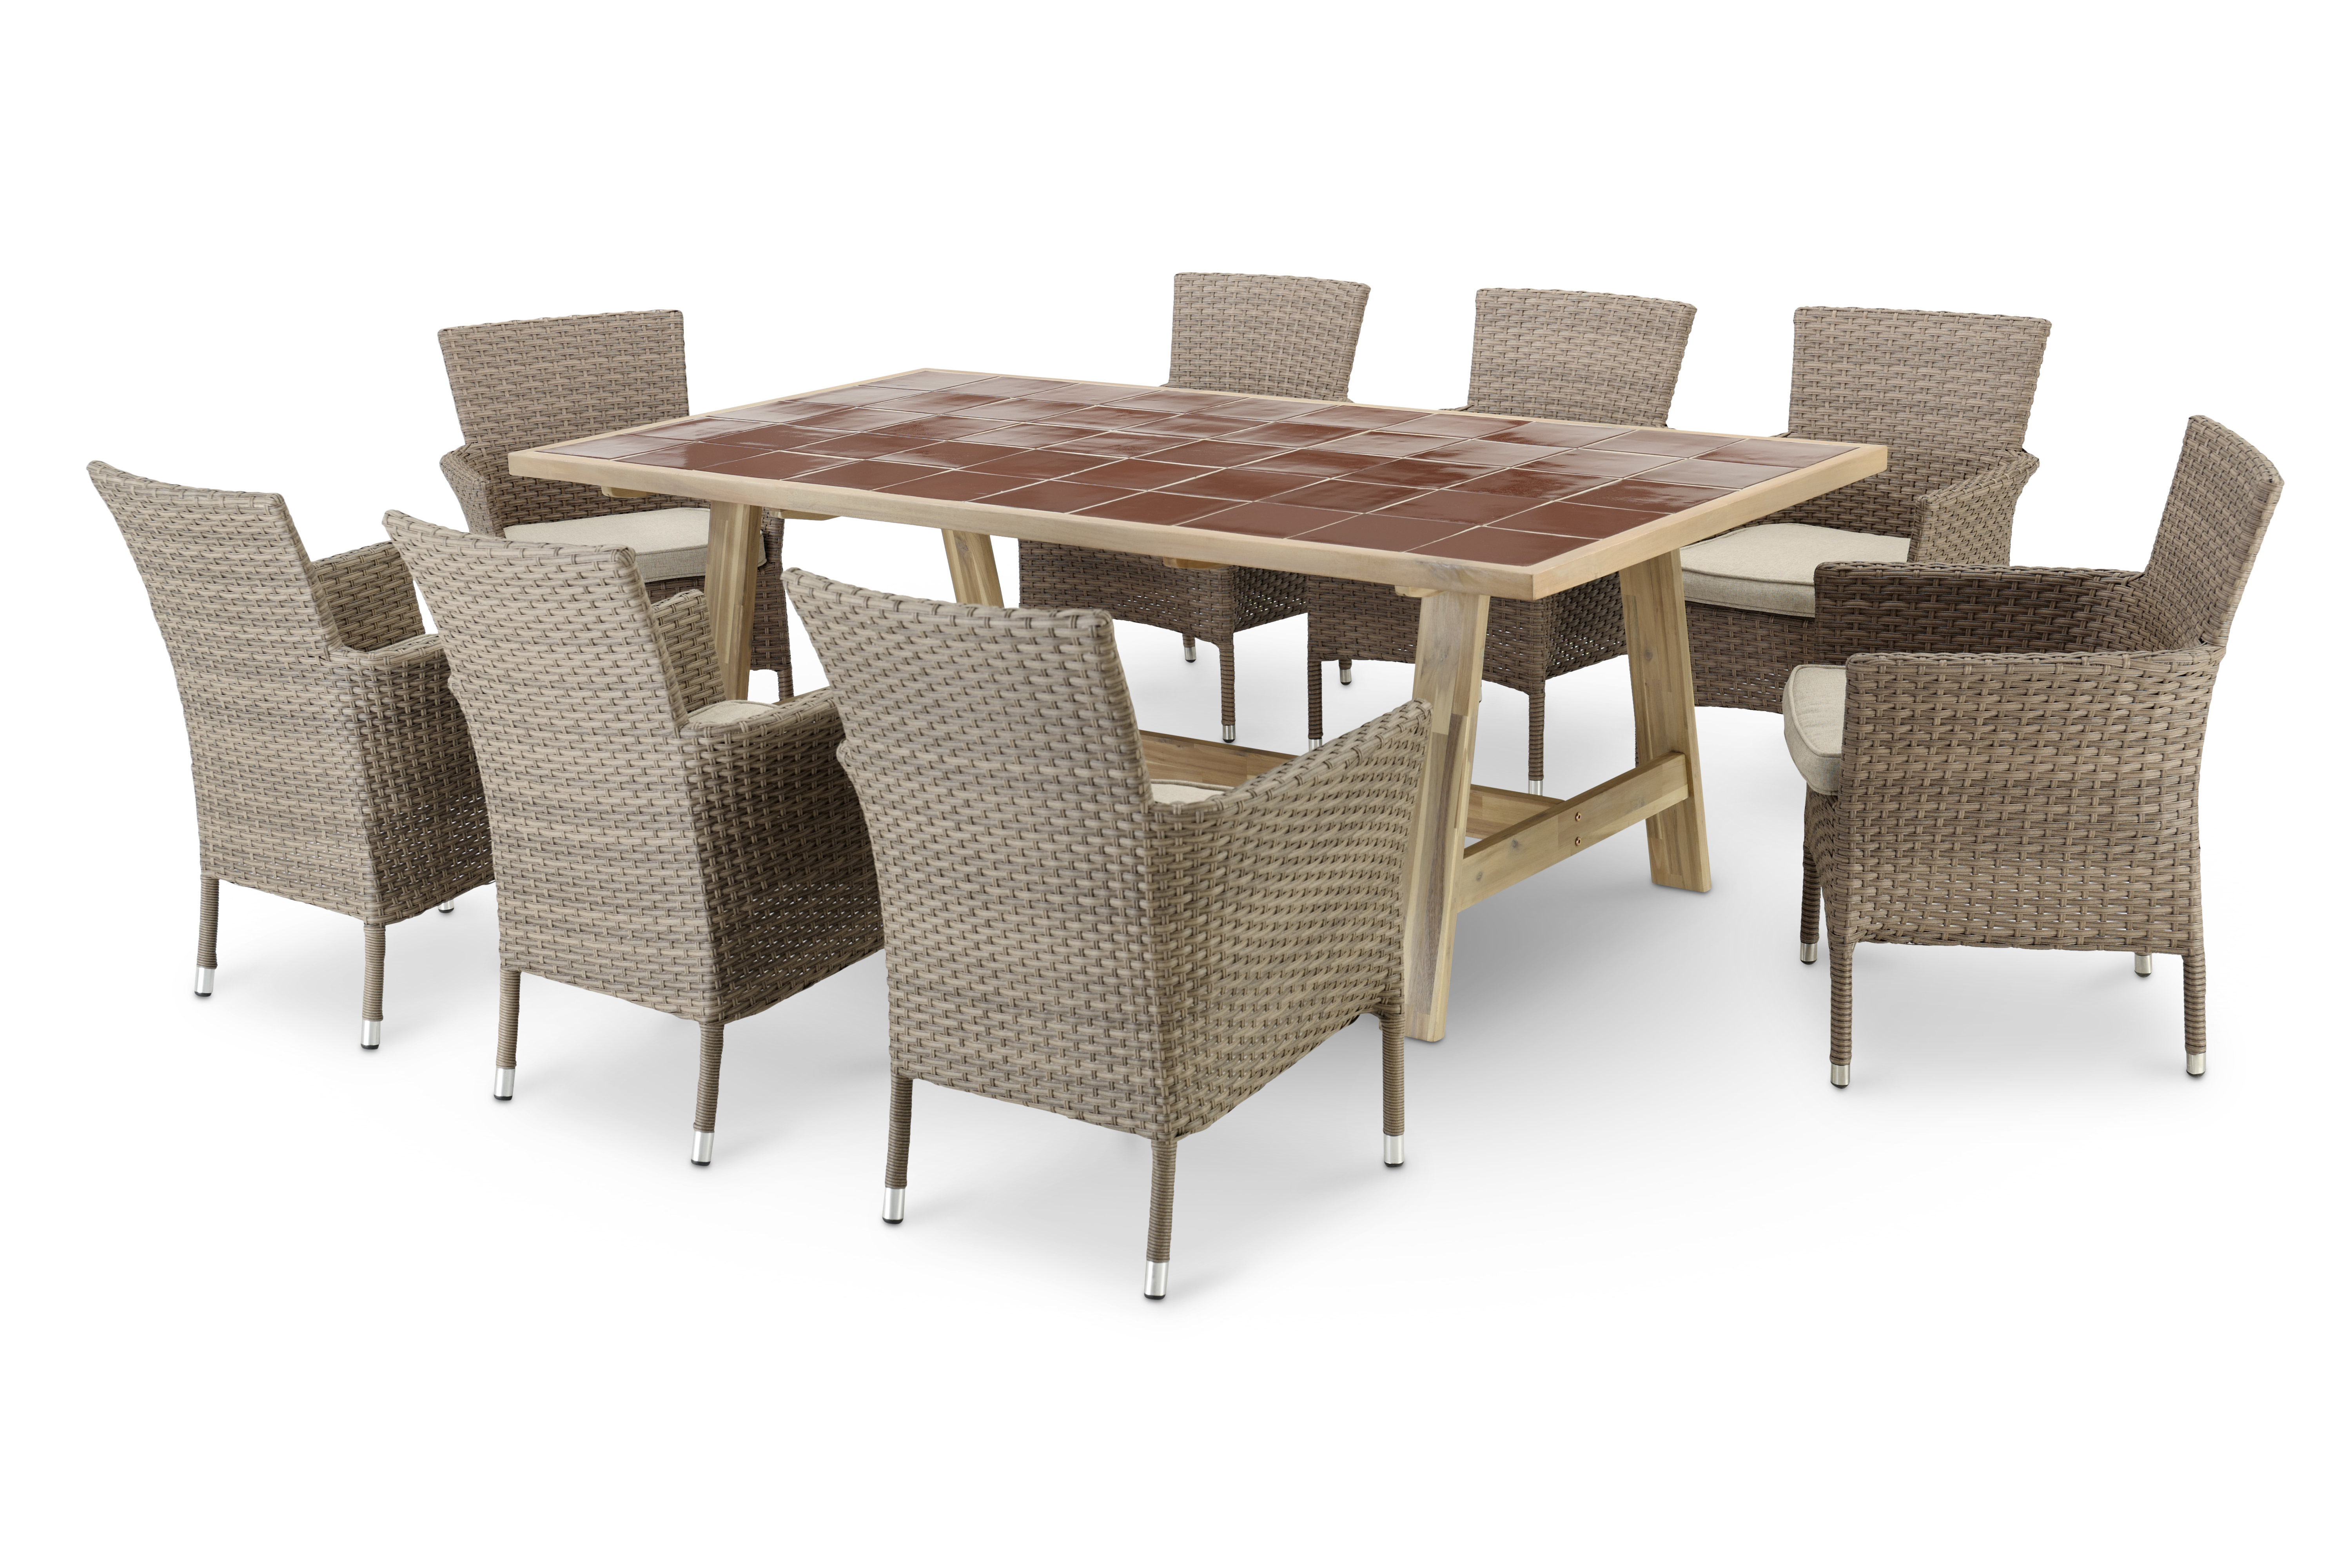 Table en céramique terre cuite 205x105 et 8 chaises empilables rotin